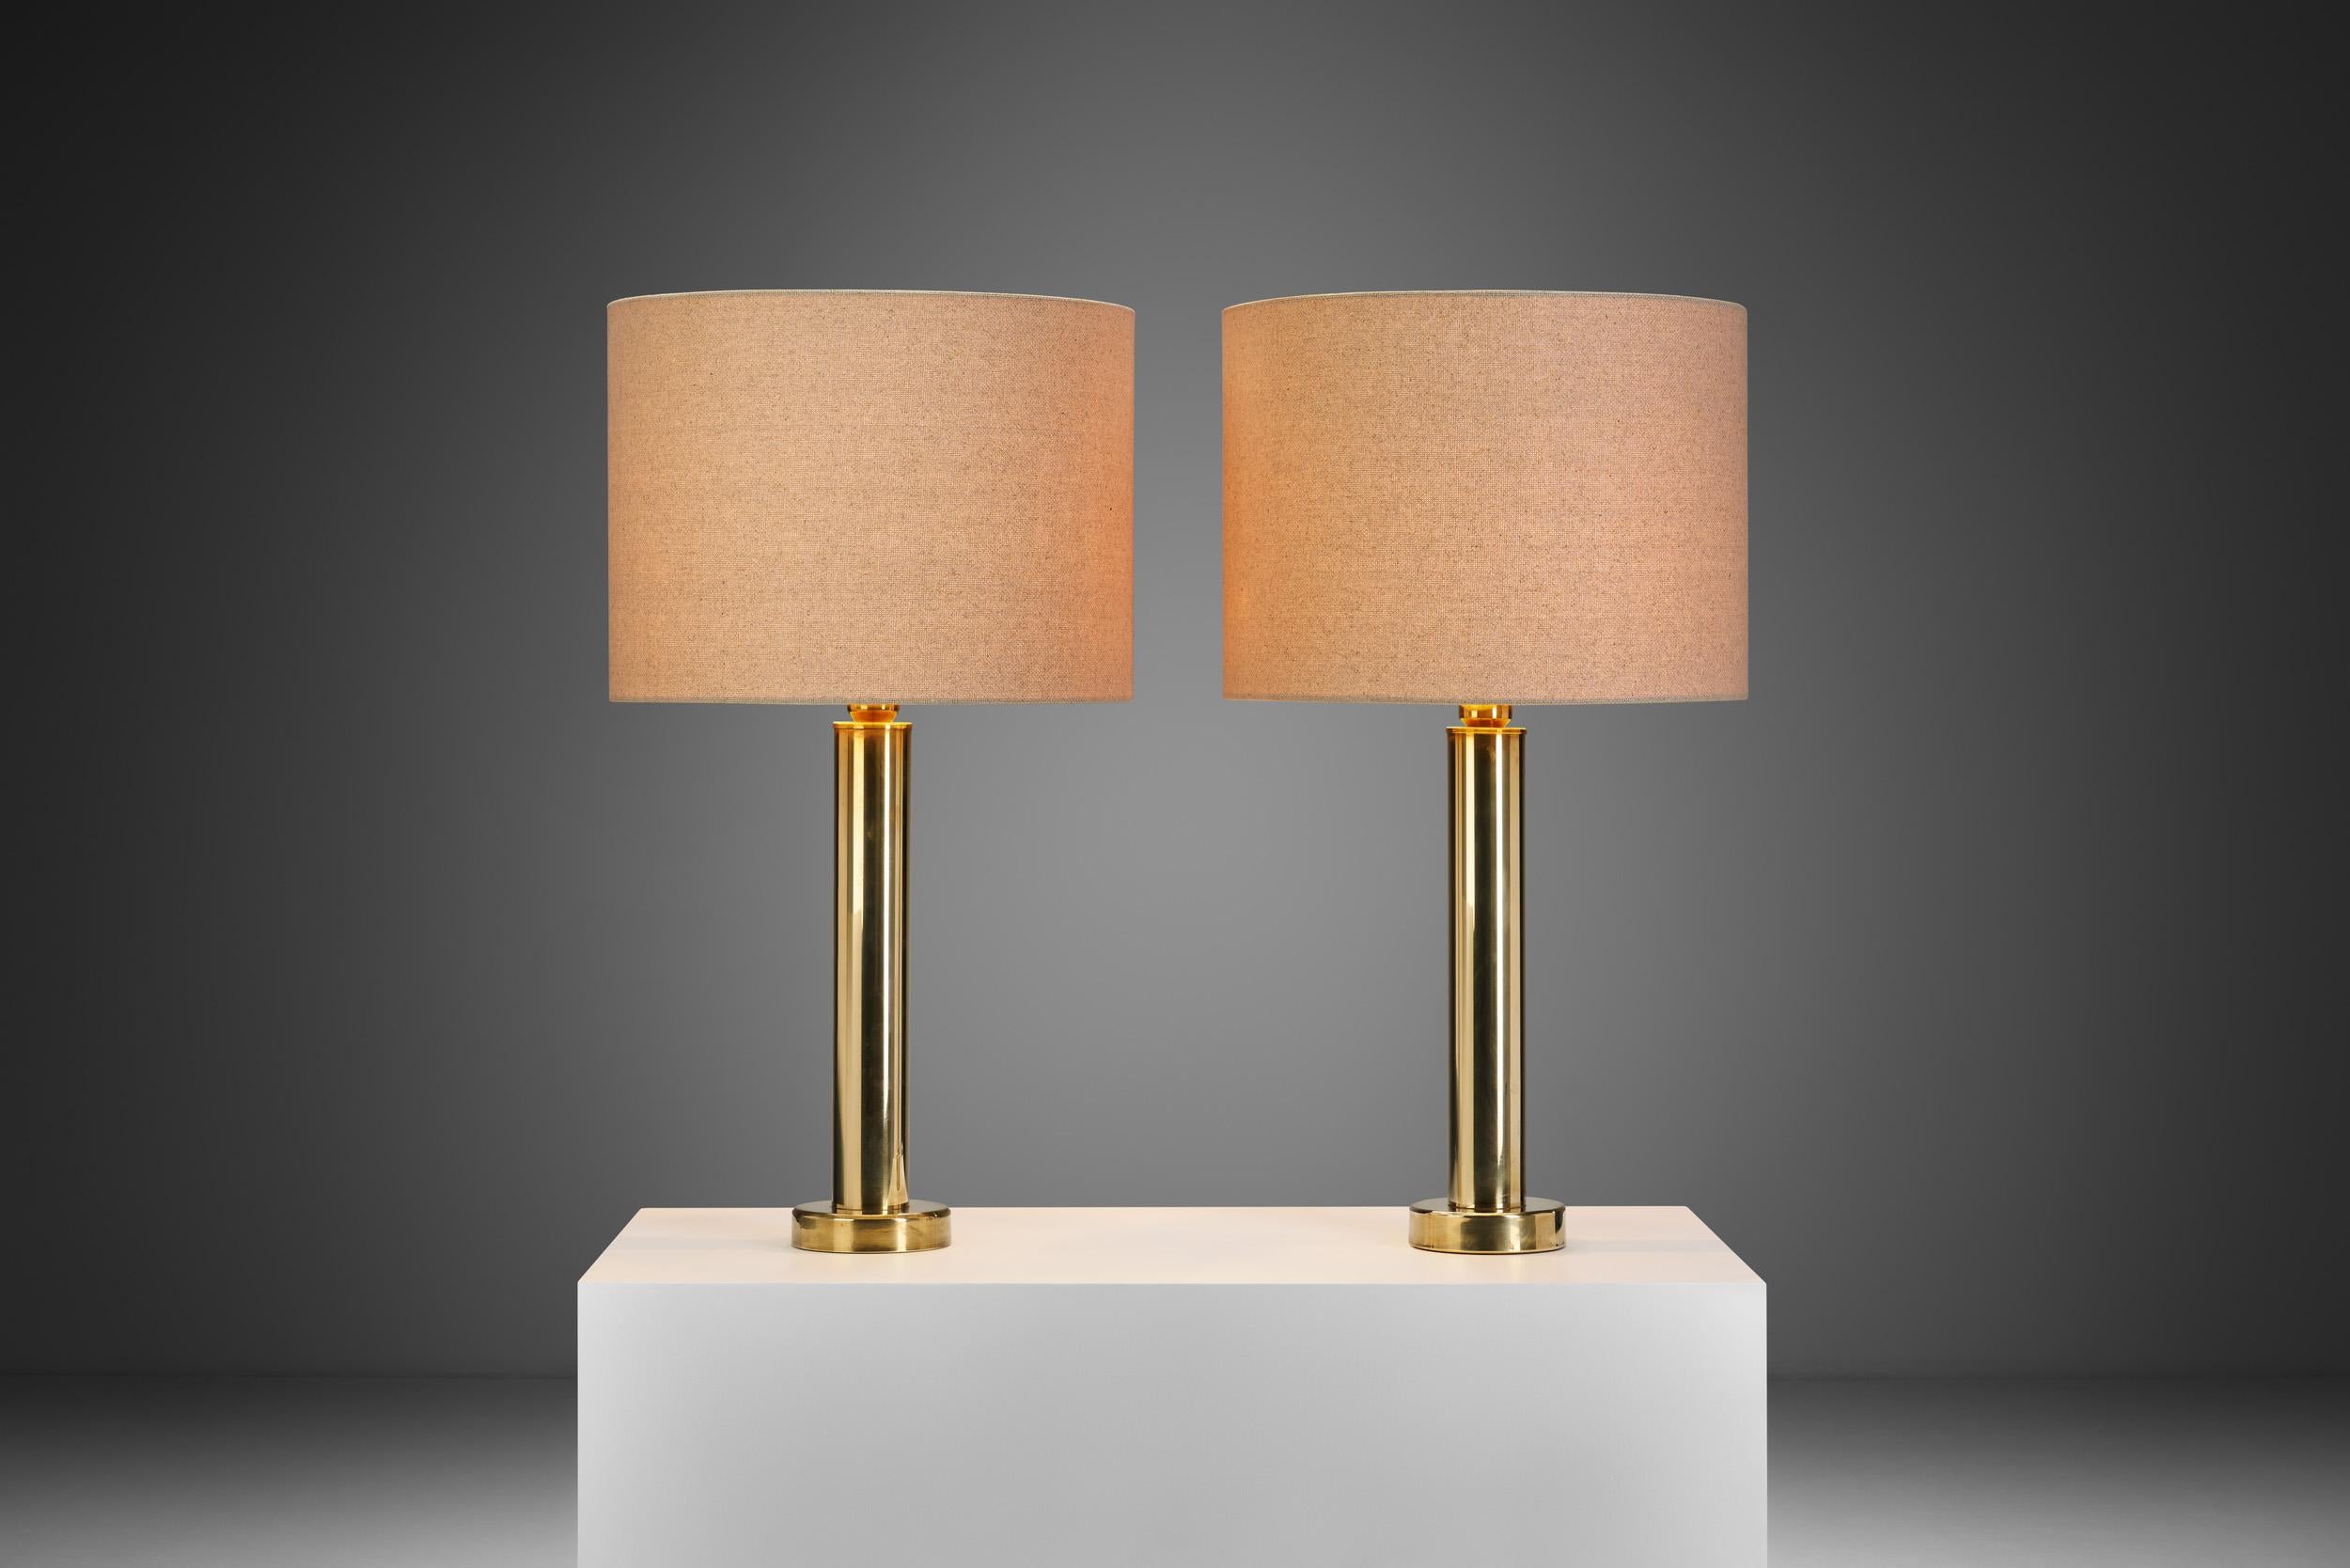 Cette paire de lampes de table modernes en laiton de Design/One Kosta est un pas dans le monde du design moderne suédois. Datant de la seconde moitié du XXe siècle, il s'agit d'une pièce intemporelle, dont l'authenticité est attestée par la mention